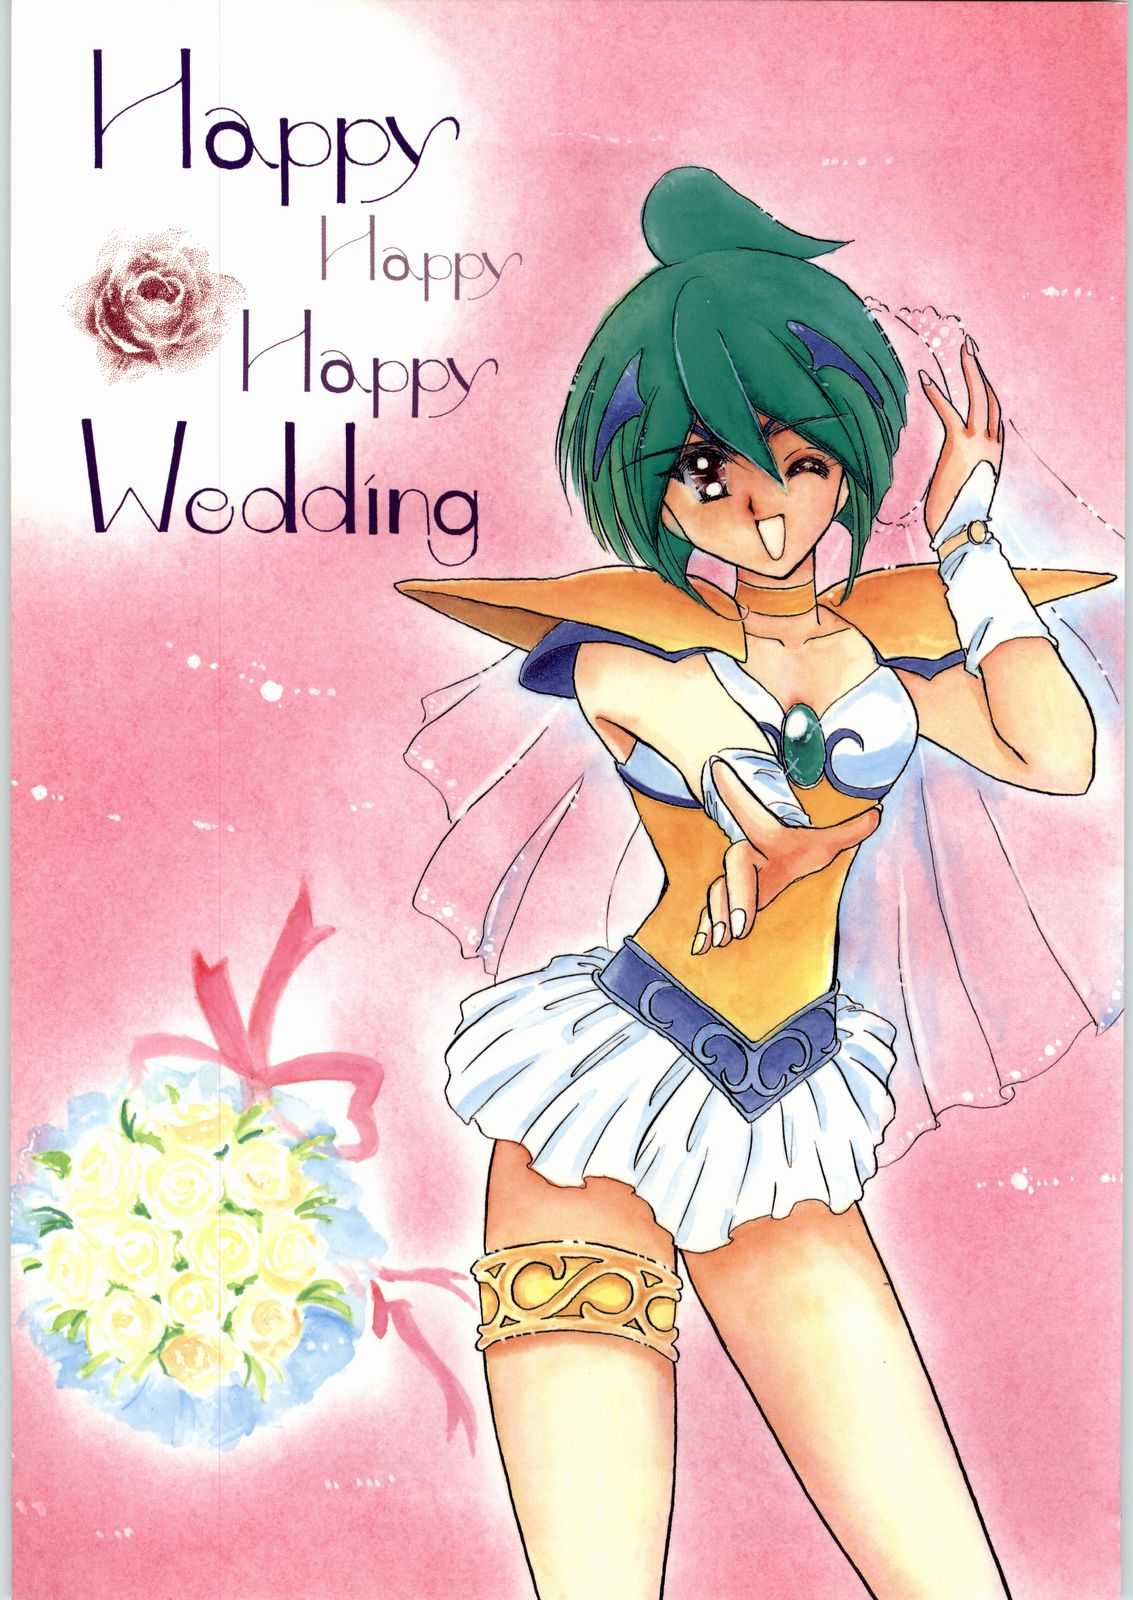 [Cafeteria Watermelon] HAPPY HAPPY HAPPY WEDDING (Ai Tenshi Densetsu Wedding Peach) [カフェテリアWATERMELON] HAPPY HAPPY HAPPY WEDDING (愛天使伝説ウェディング ピーチ)